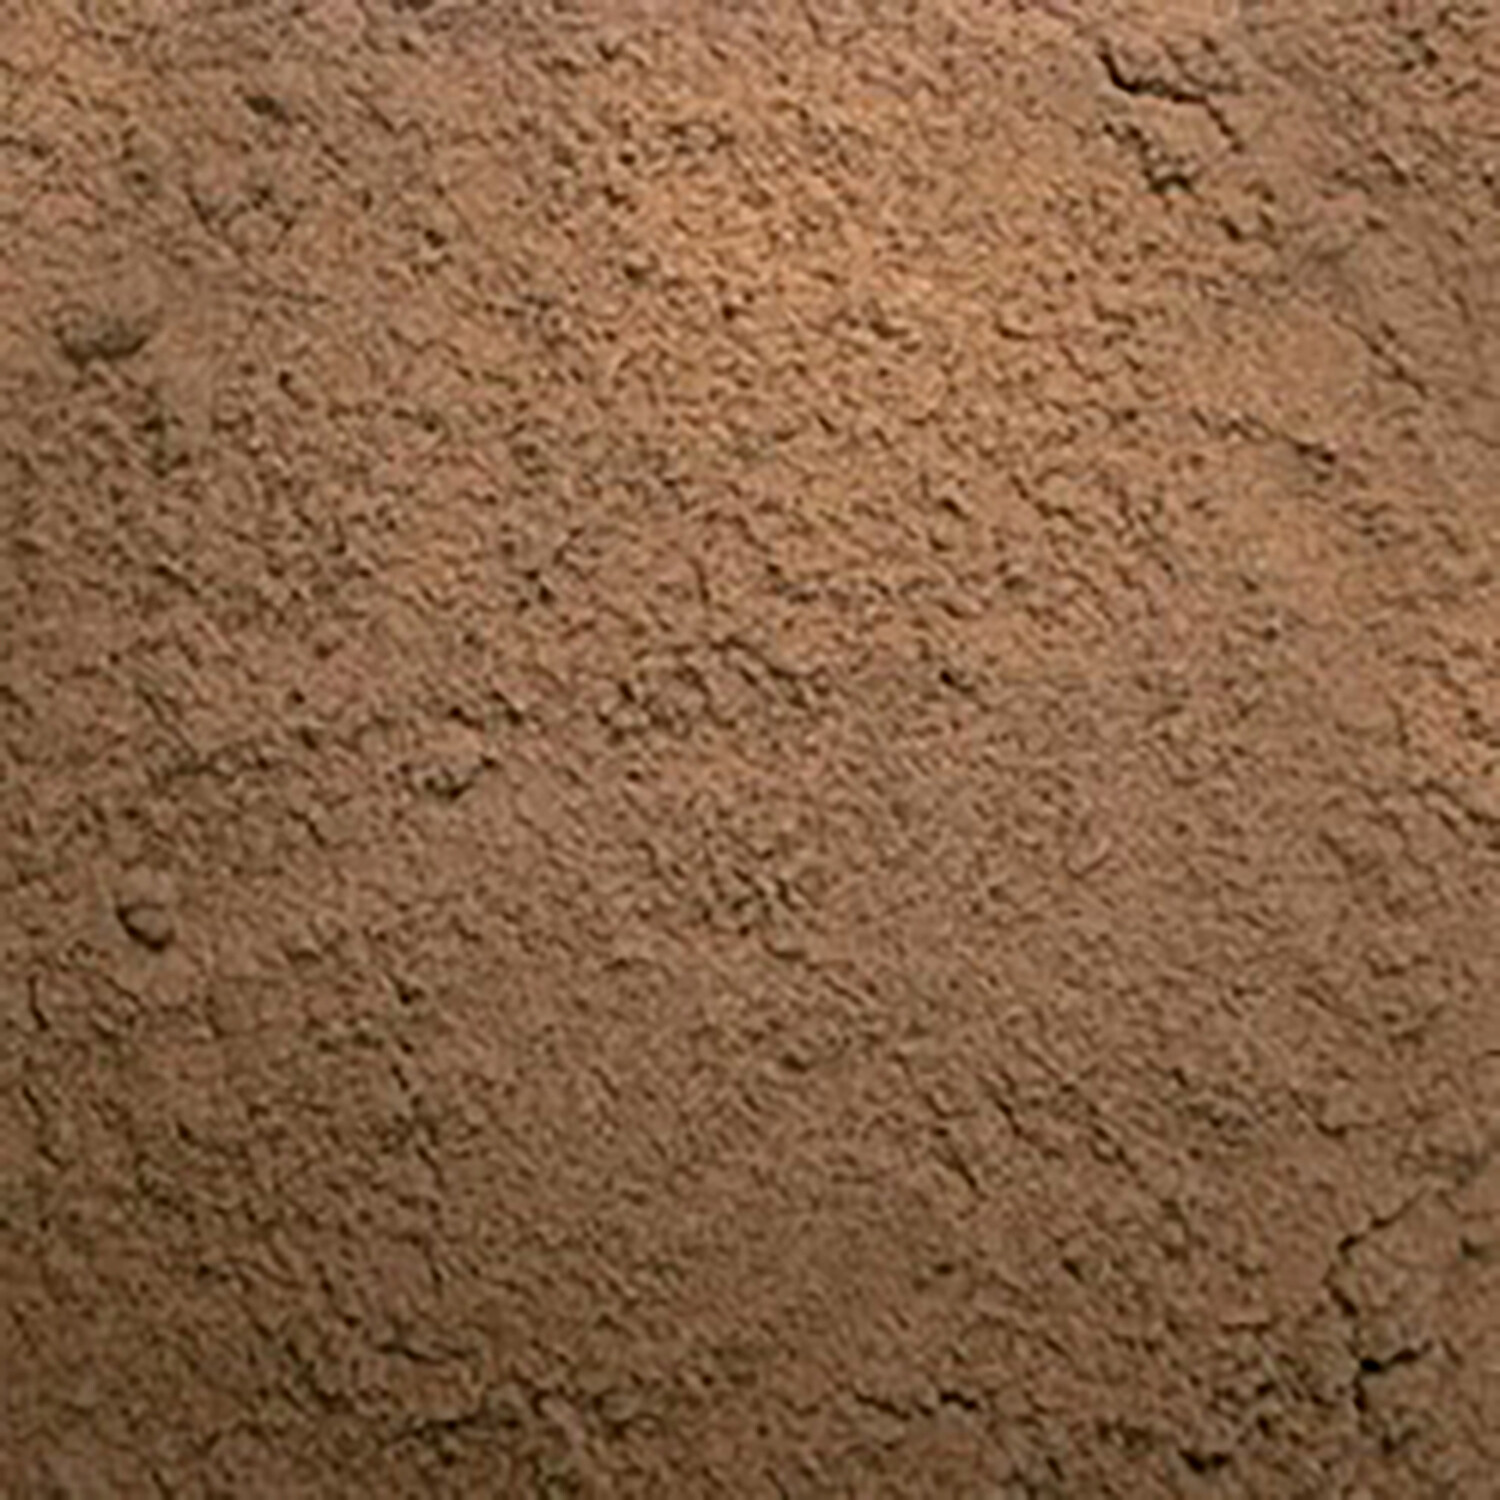 Sharp Sand 20kg Image 2